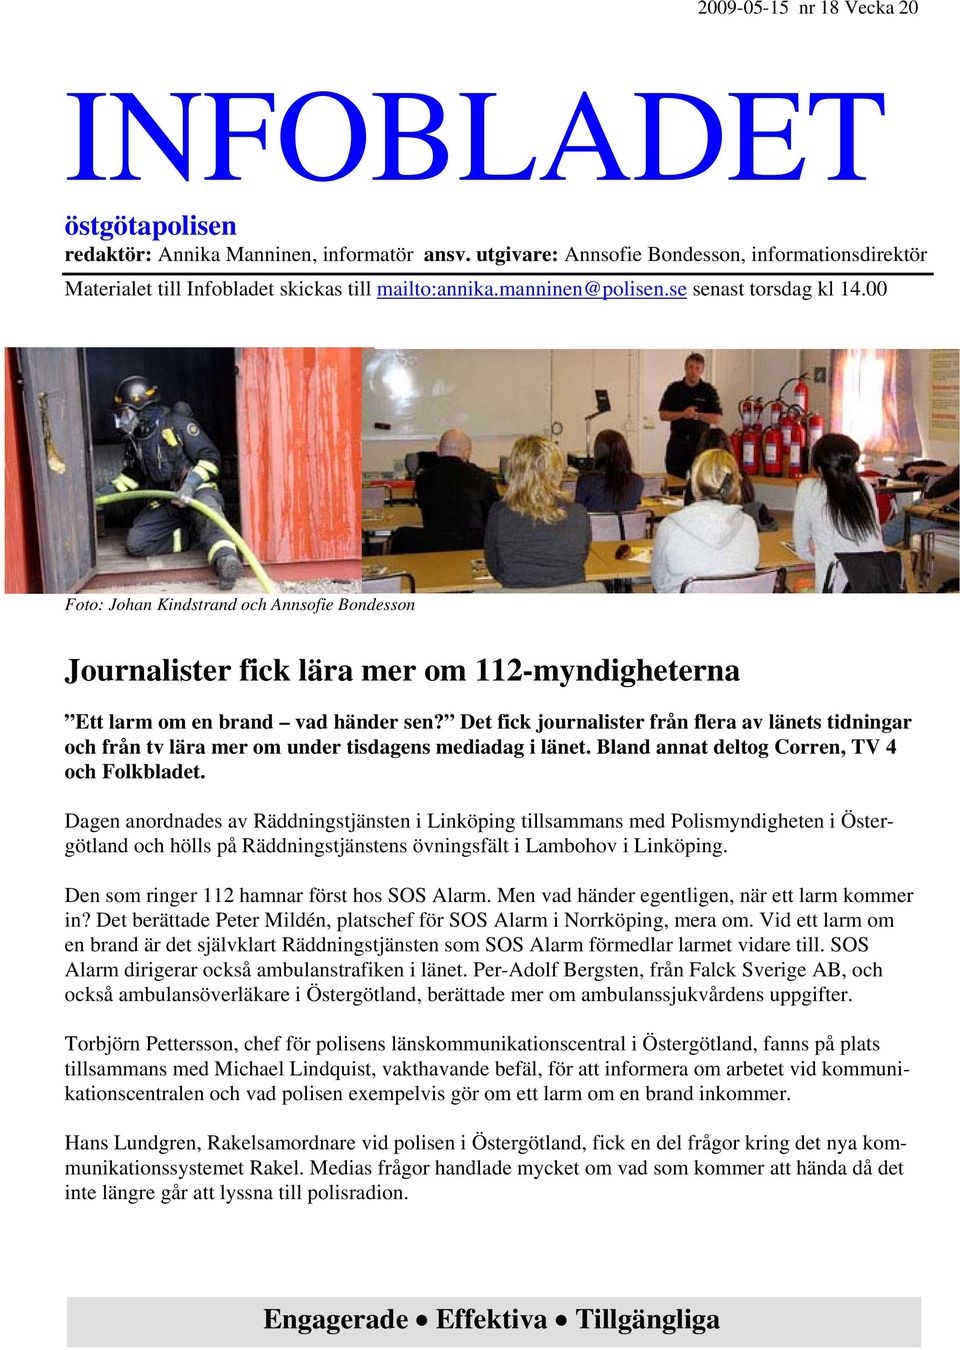 Det fick journalister från flera av länets tidningar och från tv lära mer om under tisdagens mediadag i länet. Bland annat deltog Corren, TV 4 och Folkbladet.